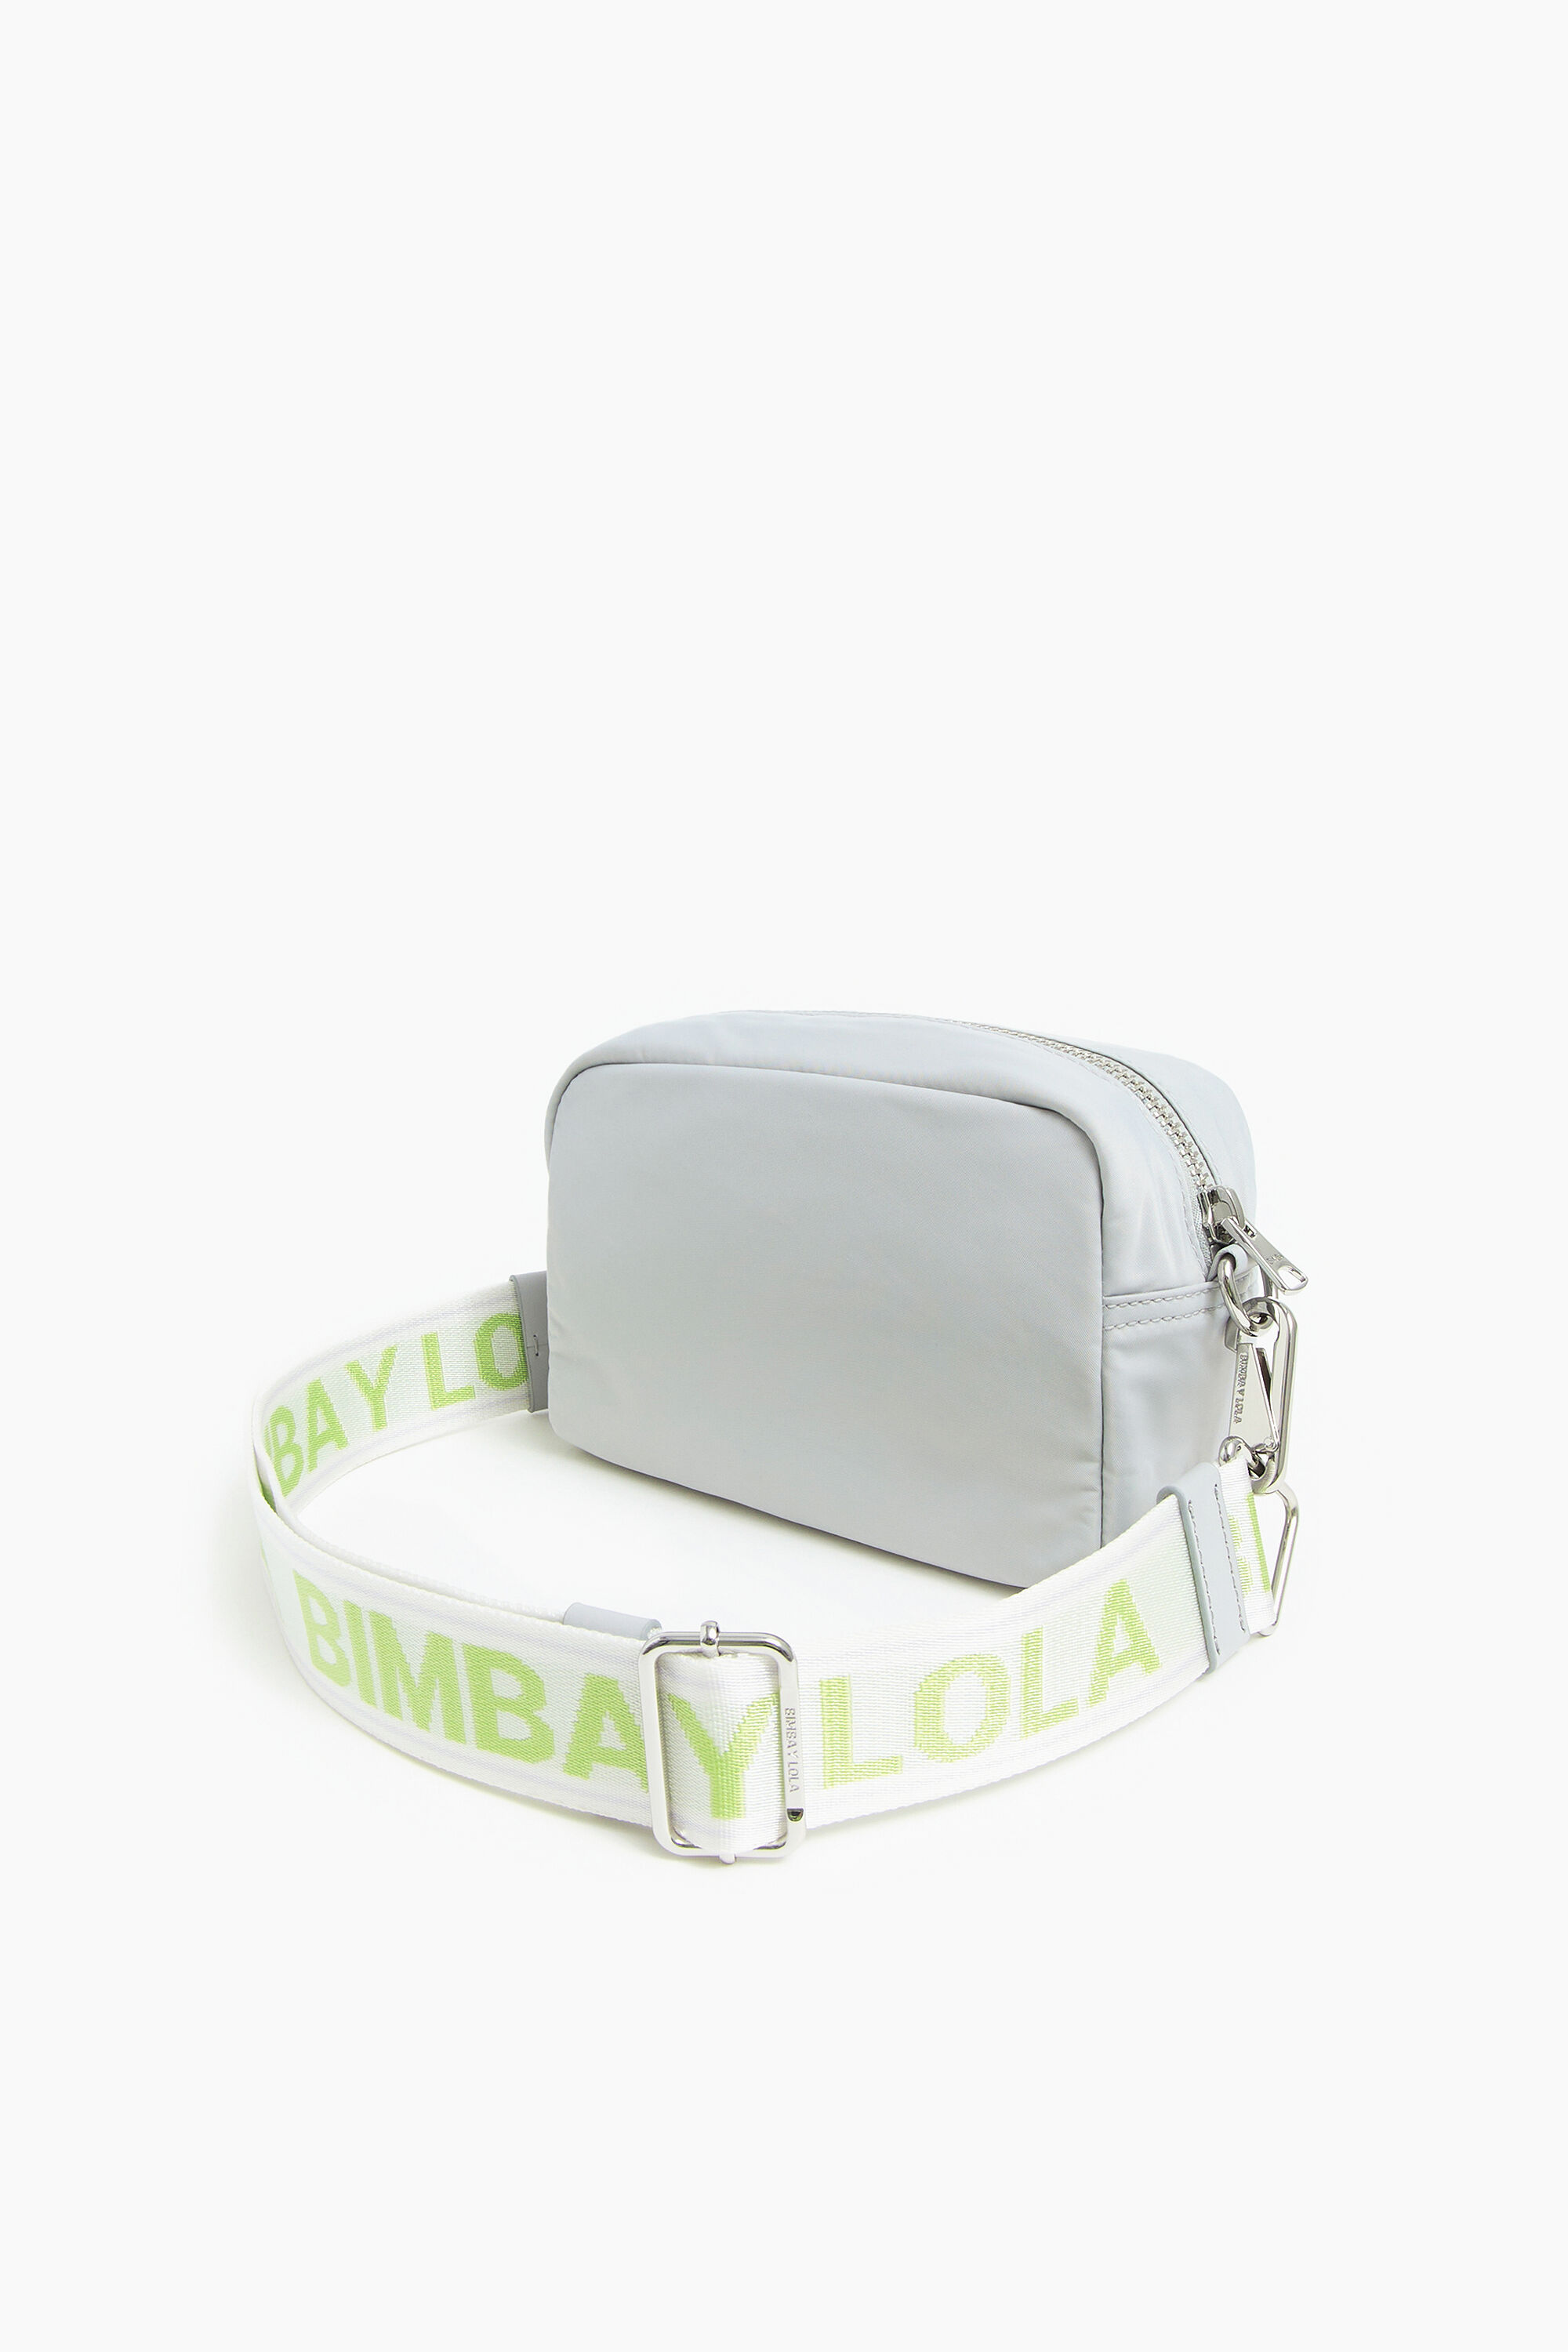 Bimba Y Lola 221BBNY1K.T2025 Small Gray Padded Nylon Crossbody Bag